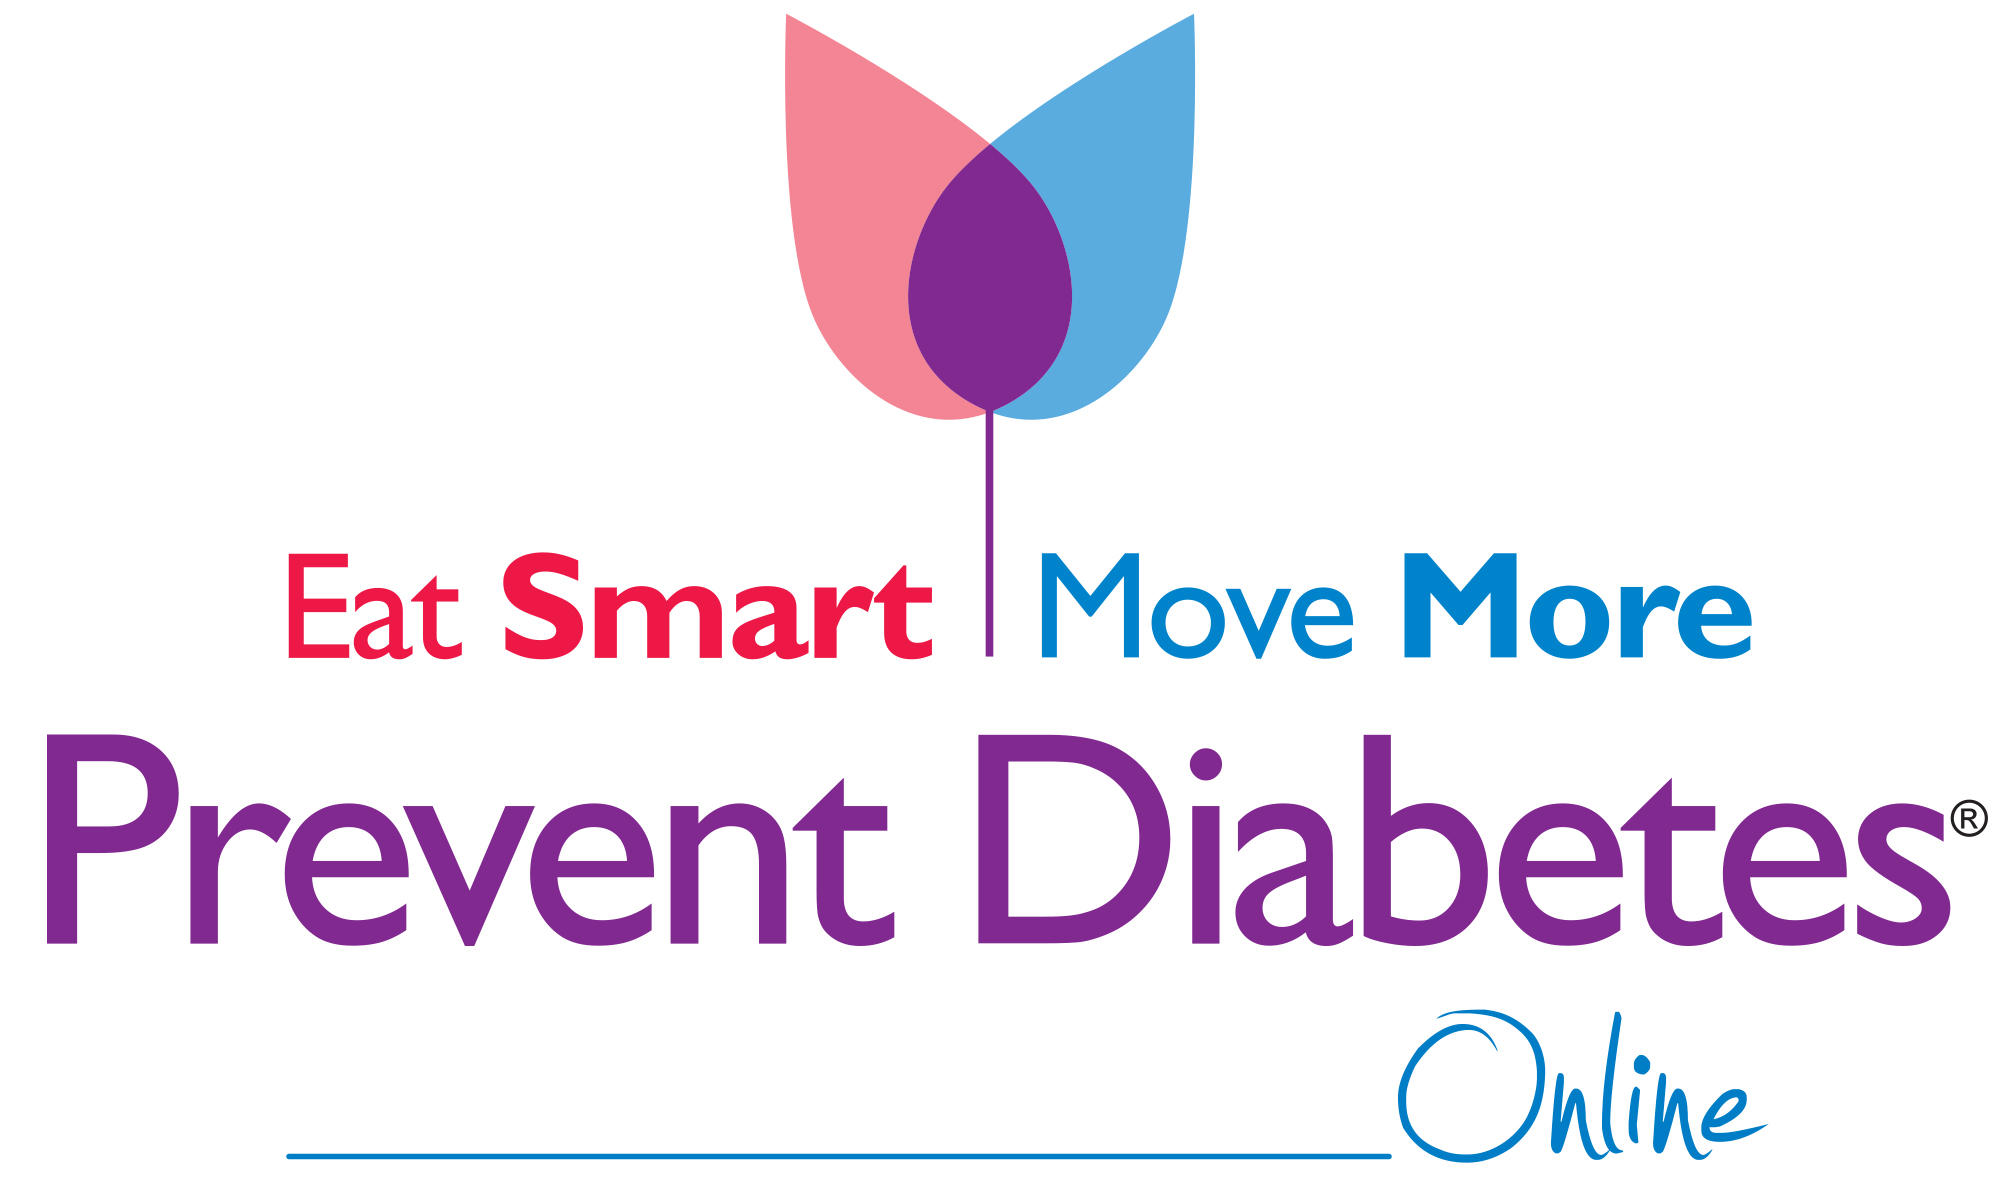 Eat Smart, Move More, Prevent Diabetes